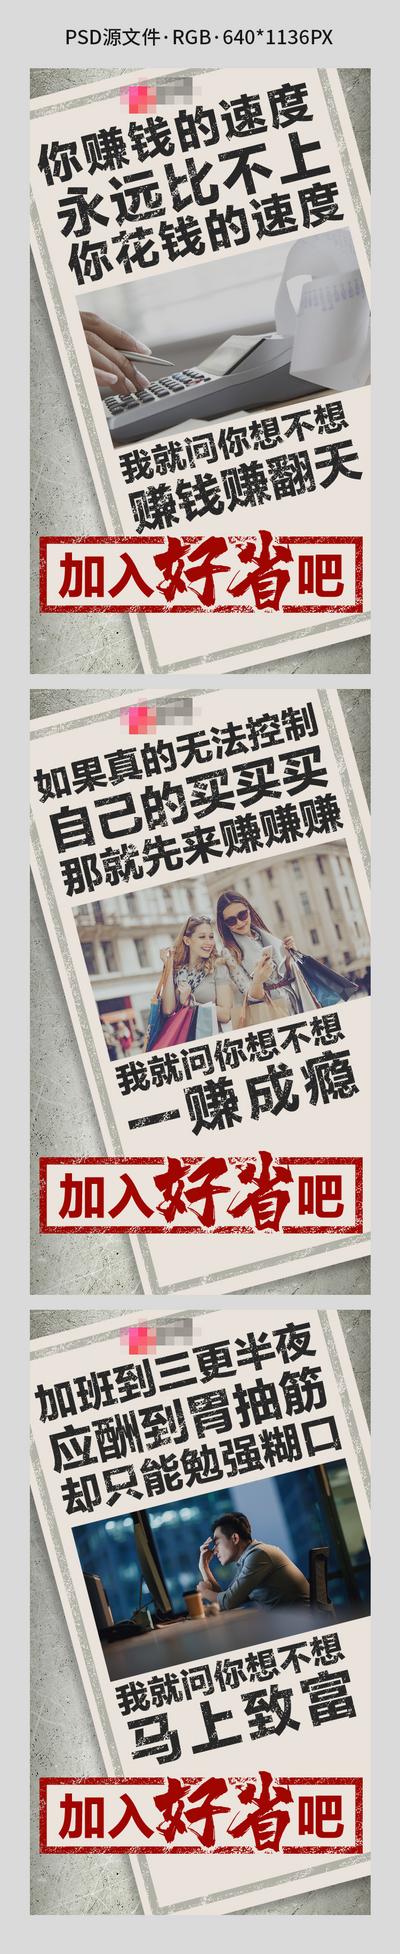 南门网 海报 二十四节气 酒吧 夜店 春分 单车